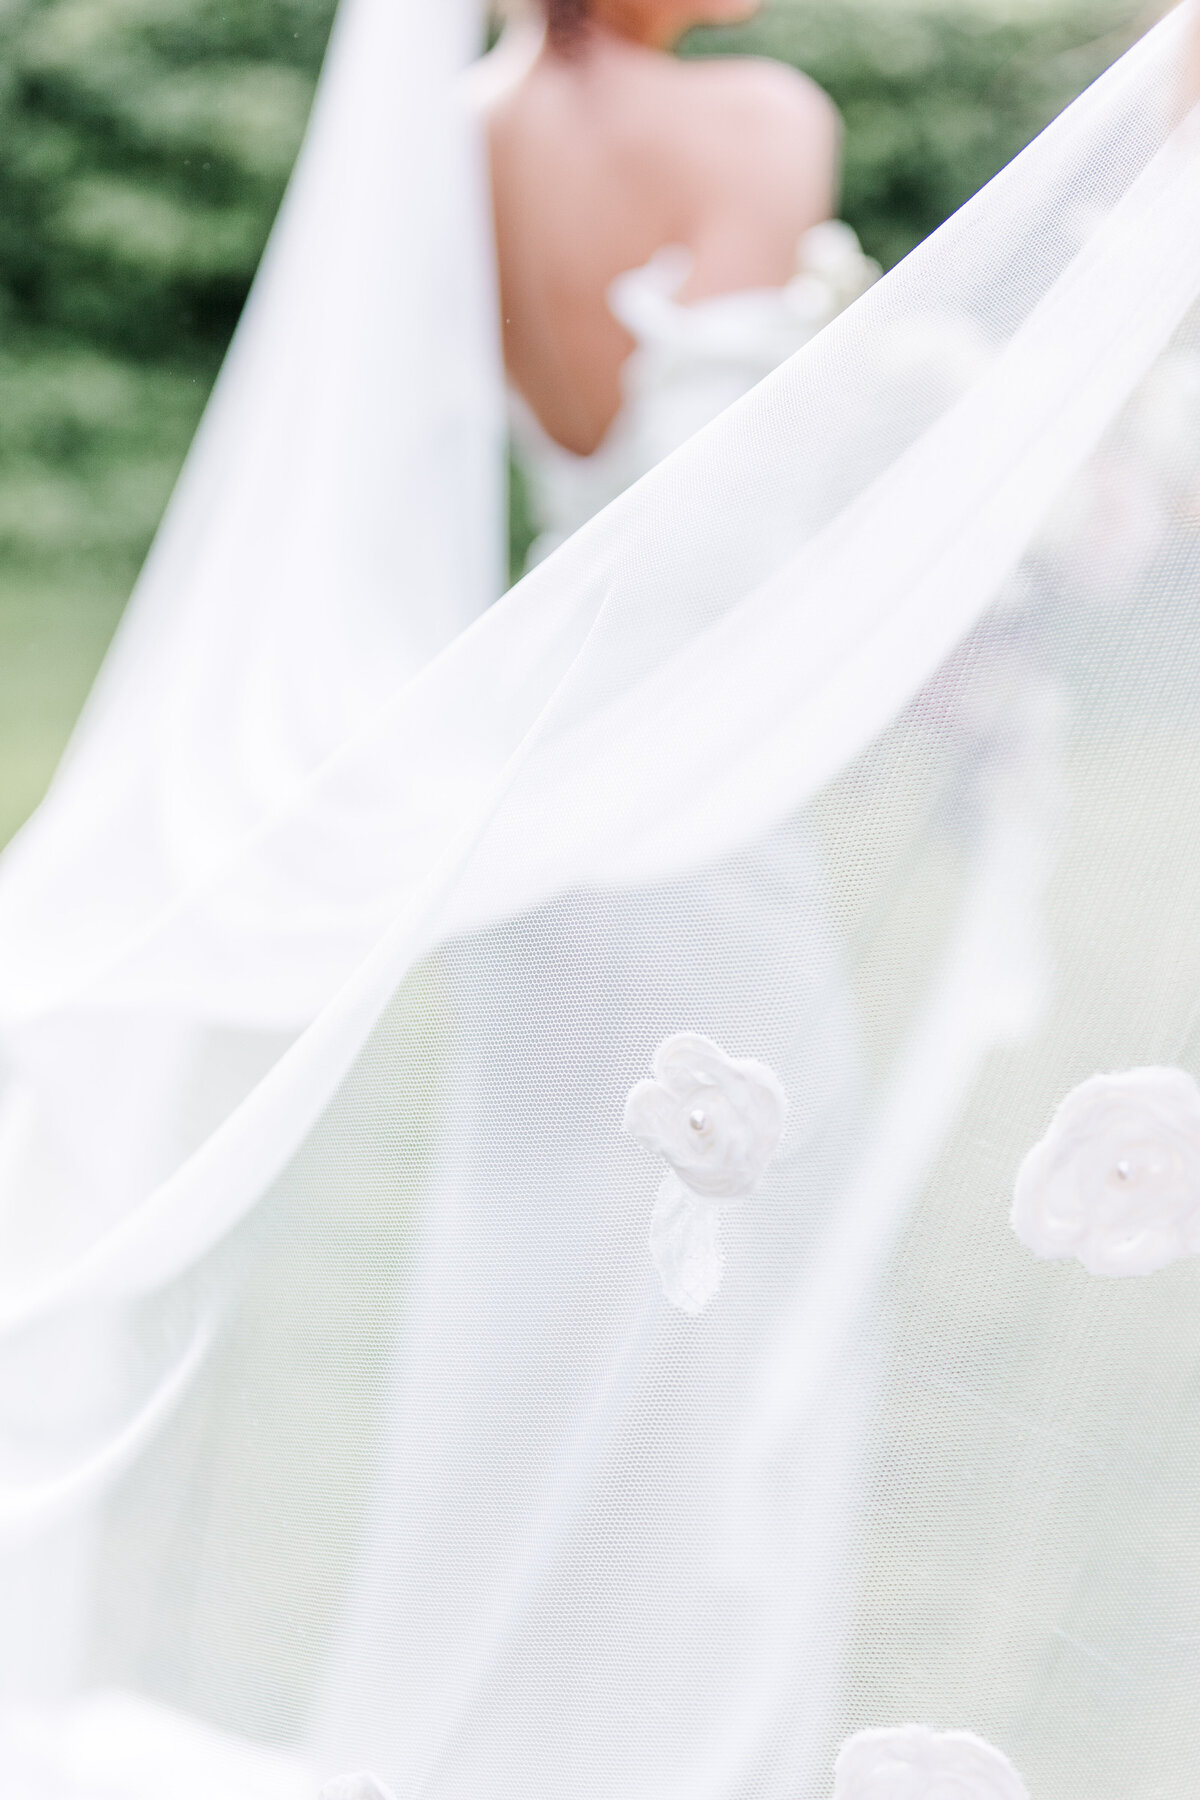 details on bridal veil